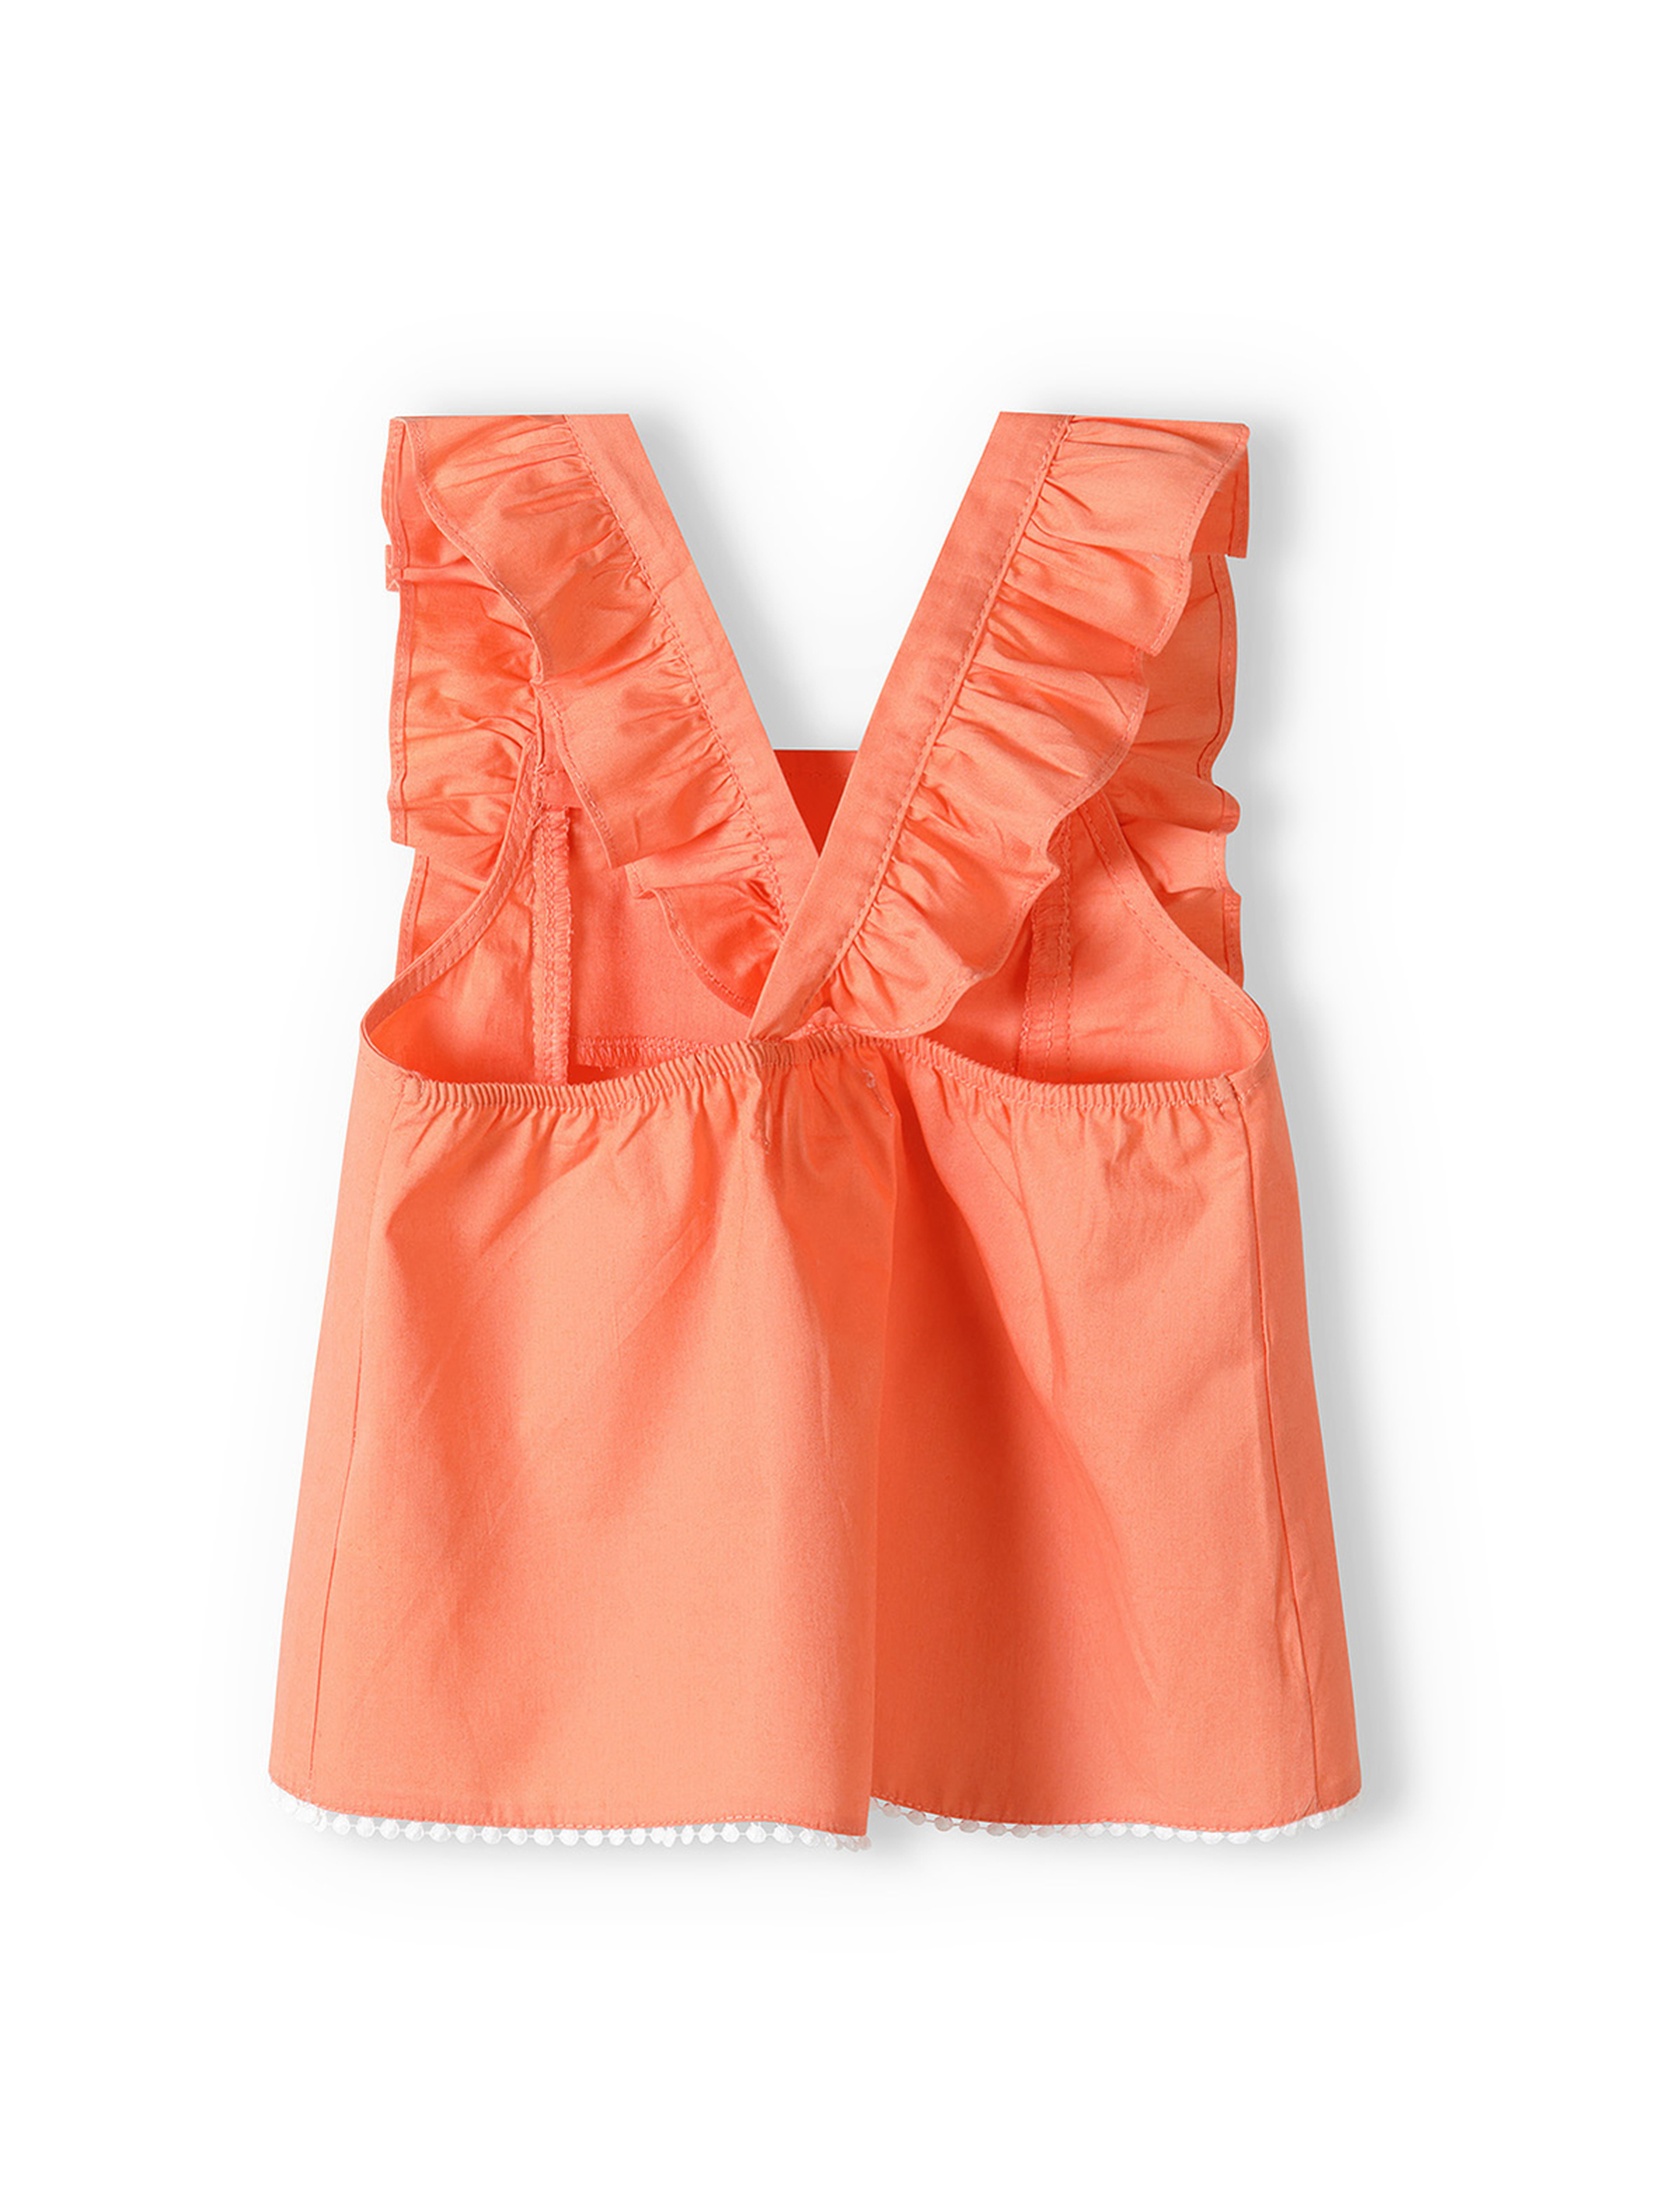 Pomarańczowy komplet dziewczęcy - bluzka na ramiączkach + spodenki